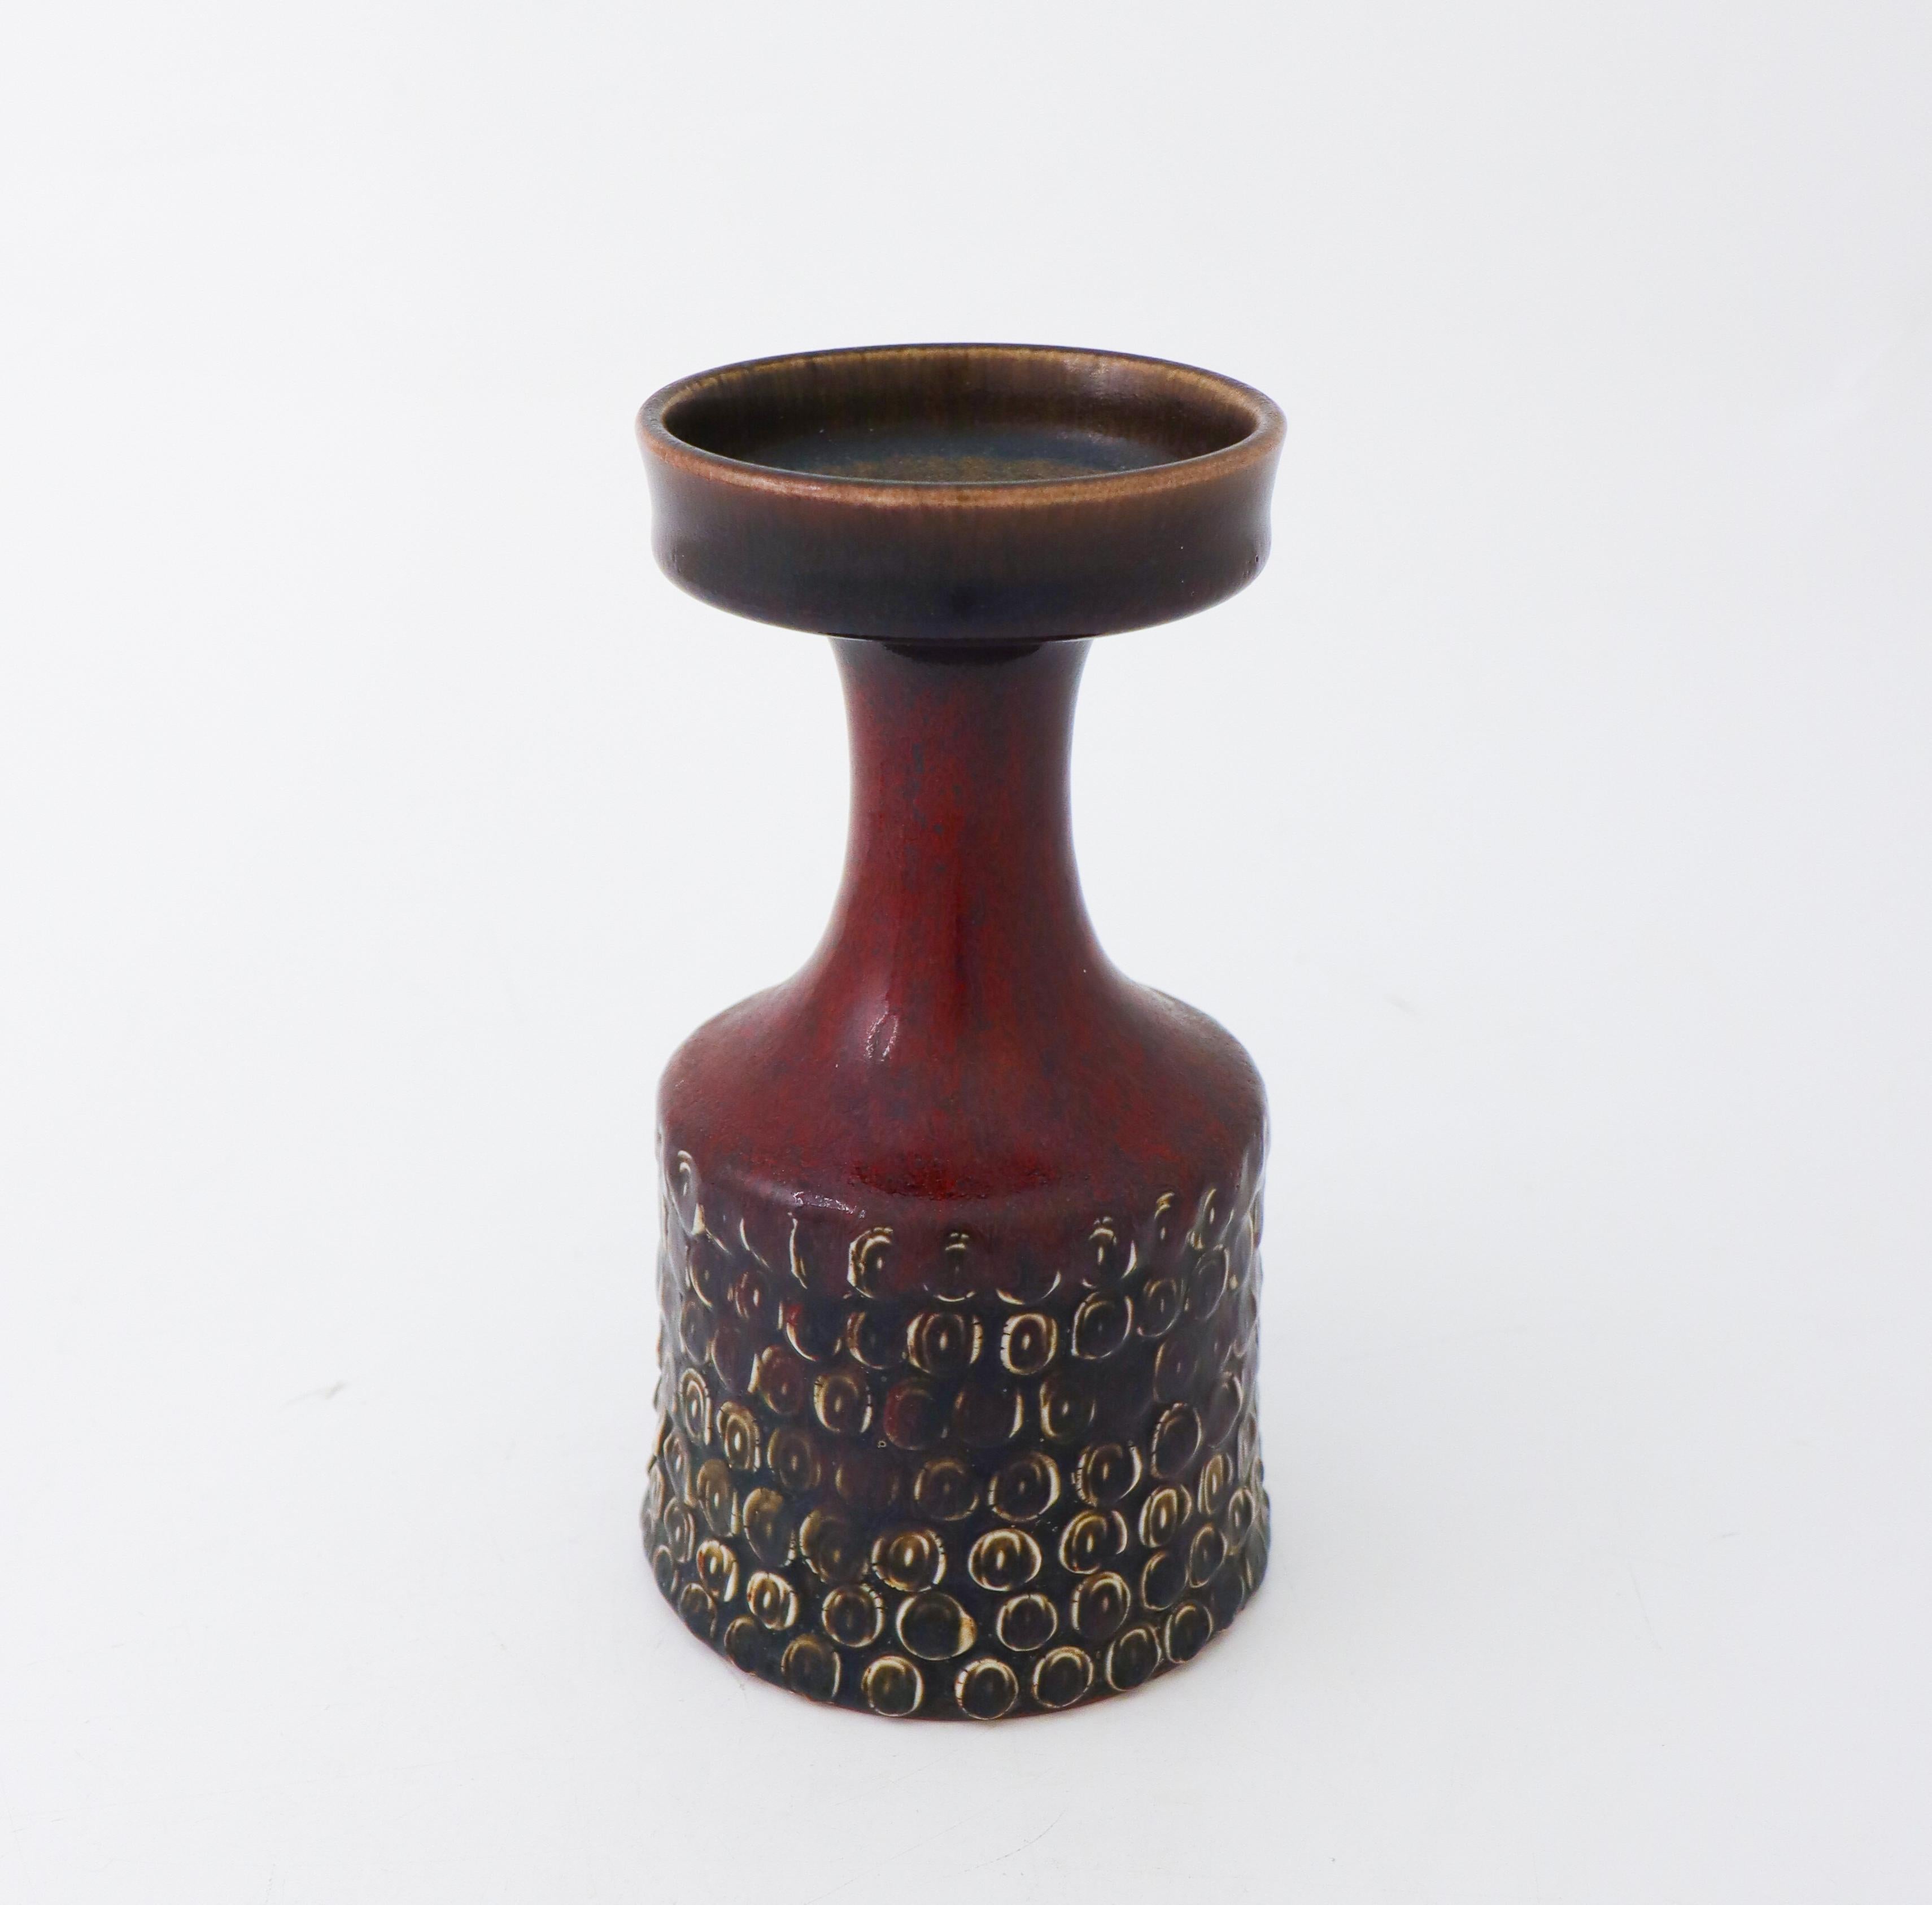 Scandinavian Modern Stig Lindberg Pottery - Unique Red Oxblood Vase - Gustavsberg Studio For Sale